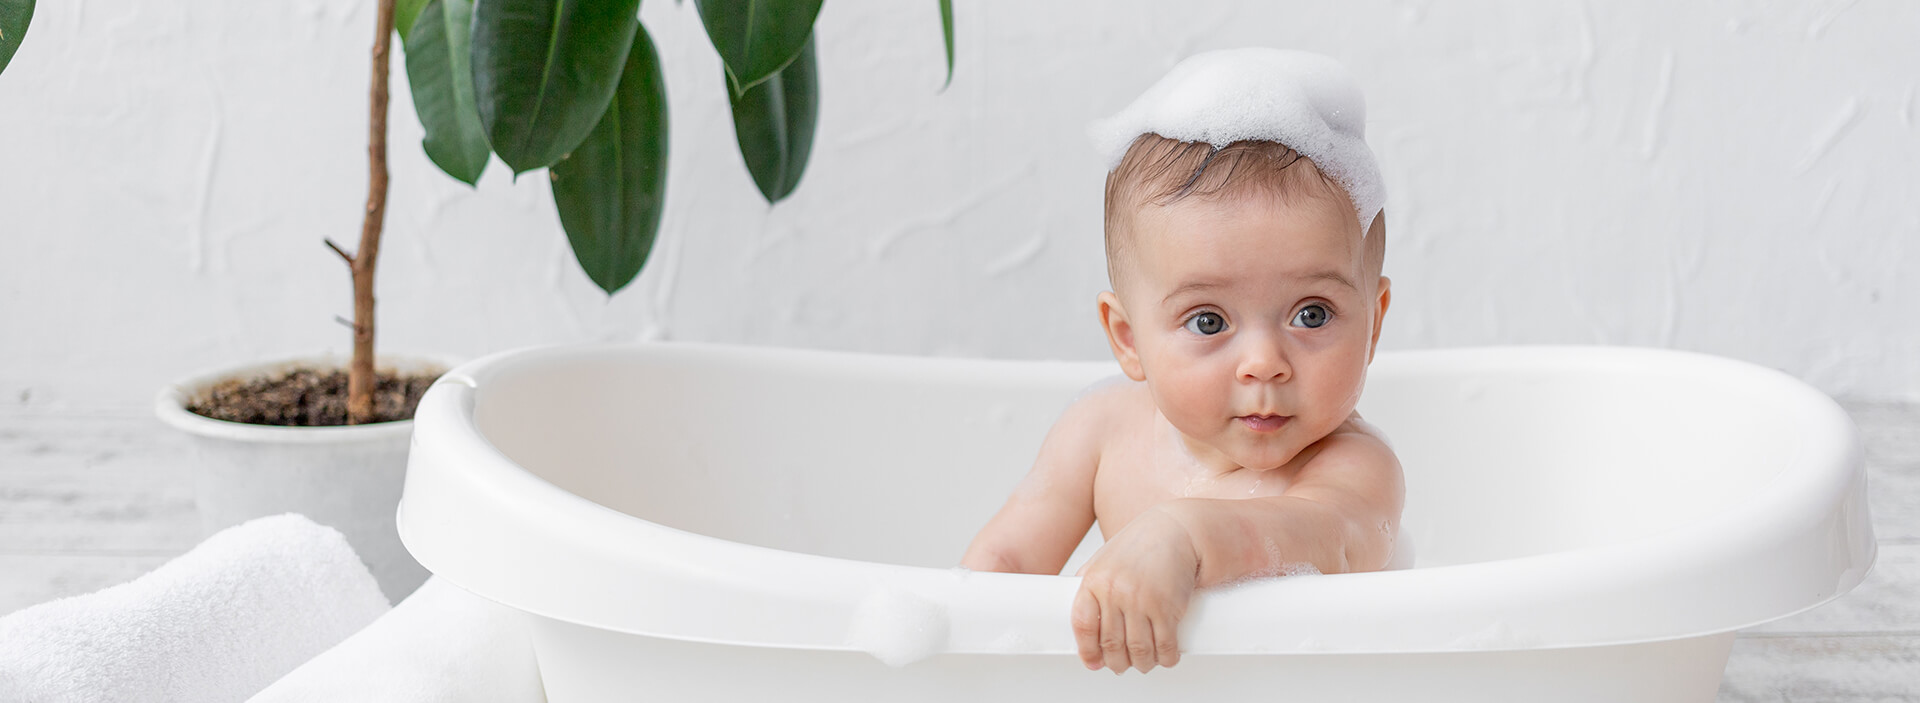 Μπάνιο για το Μωρό | Αξεσουάρ & Παιχνίδια